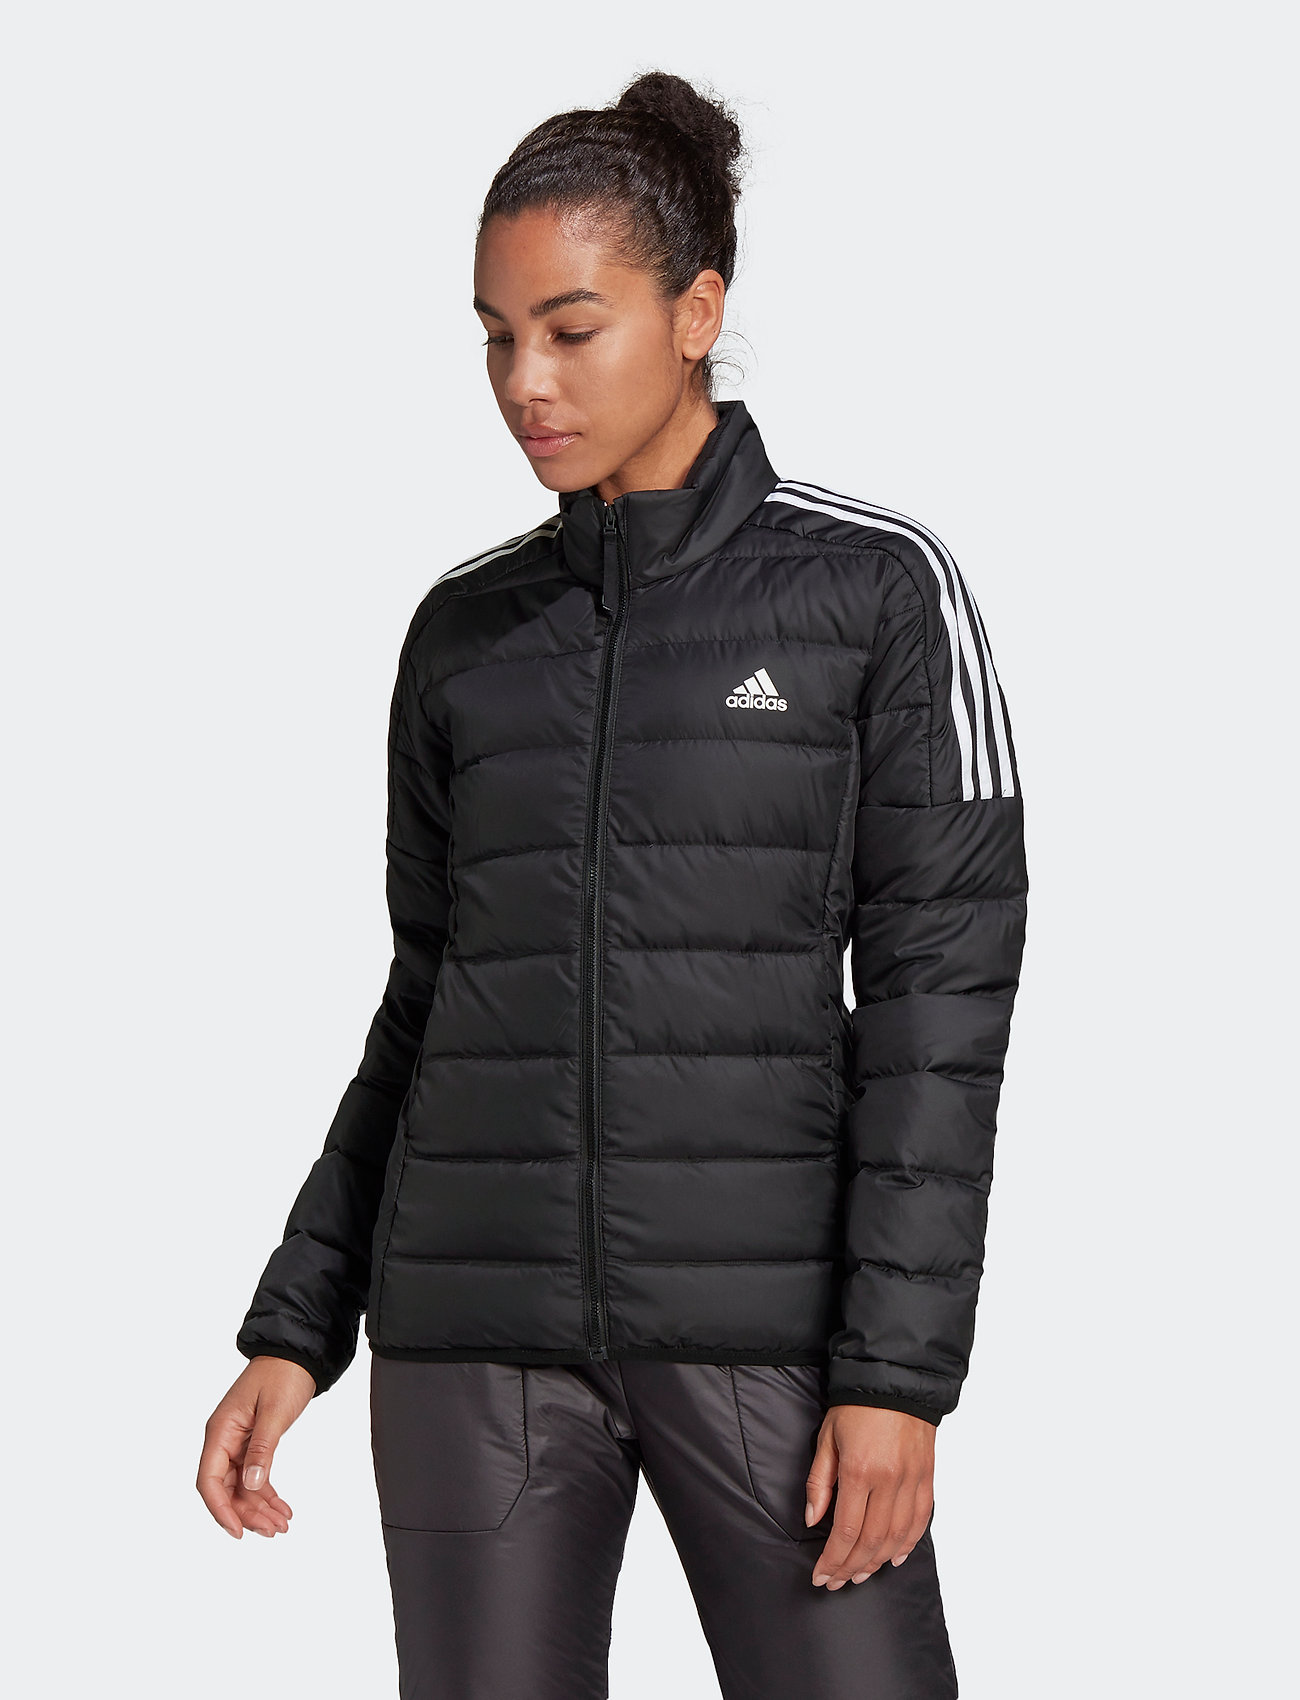 Down - 377 kr. Køb Forede jakker fra adidas Performance online på Boozt.com. Hurtig levering & nem retur